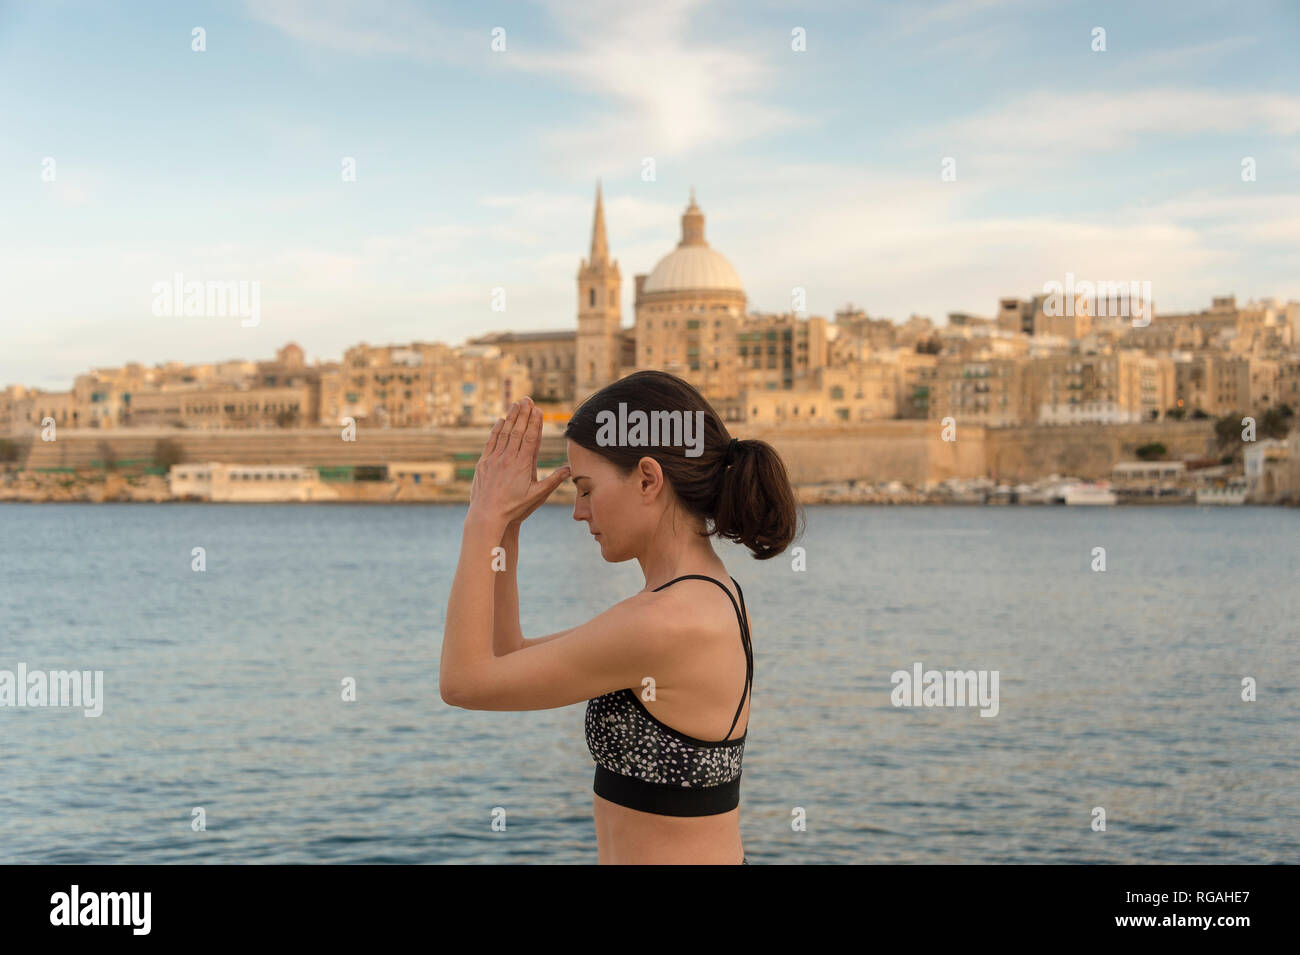 Spirituelle Frau in yoga meditation dritte Auge pose mit Valletta Stadtbild Hintergrund Stockfoto